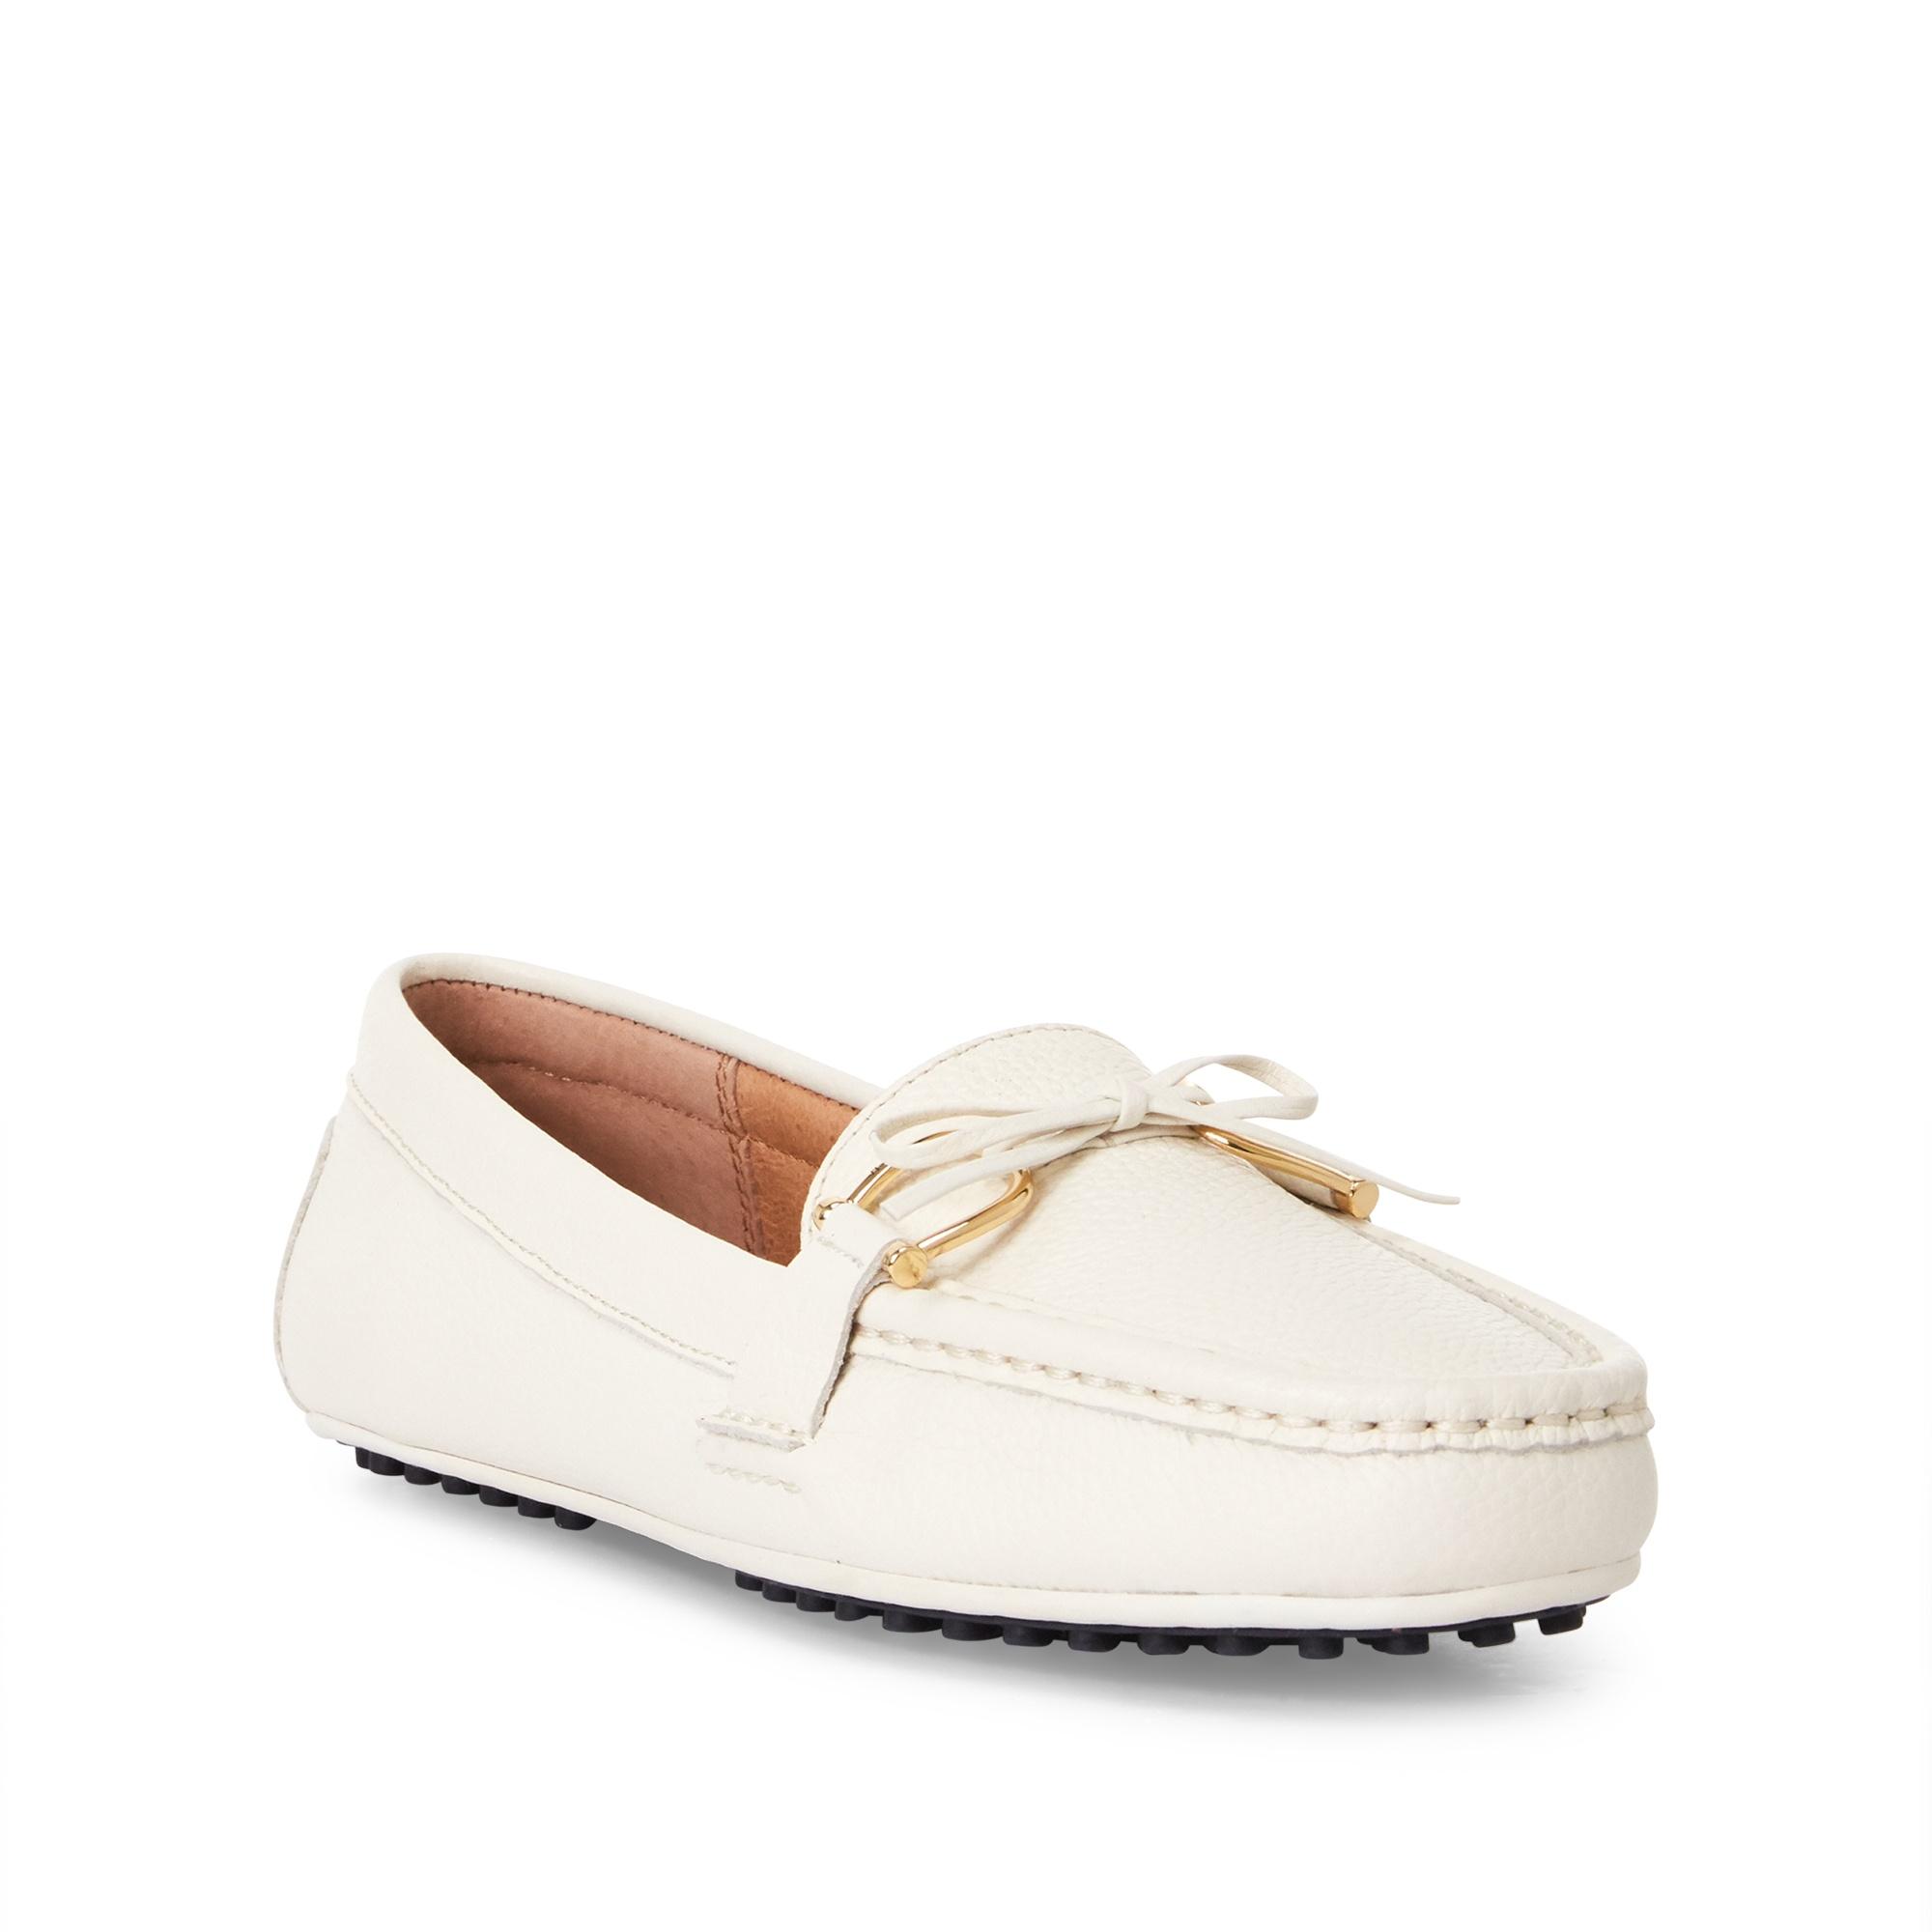 Ralph Lauren Briley Ii Leather Loafer in Vanilla (White) - Lyst